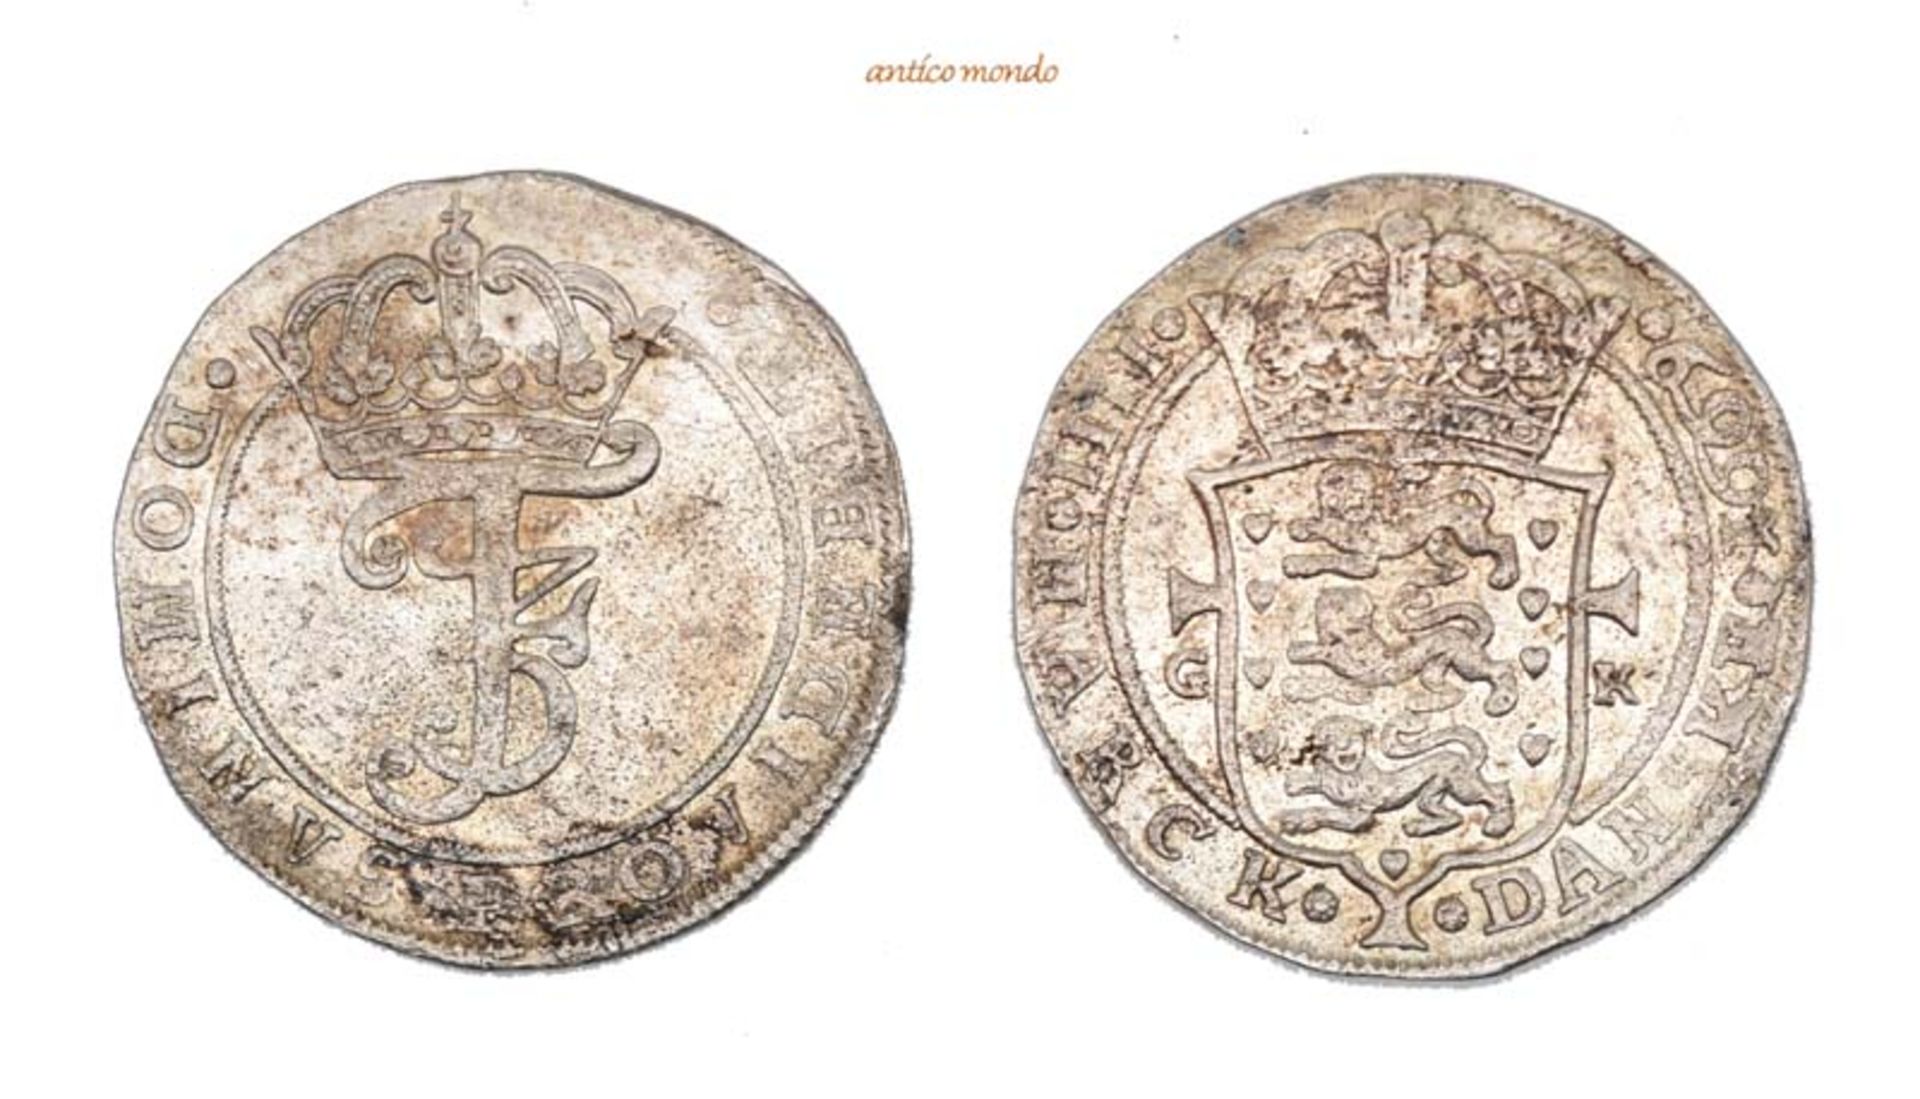 Dänemark, Frederik III., 1648-1670, Krone (4 Mark), 1669, Kl. Schrötlingsfehler, sehr schön-